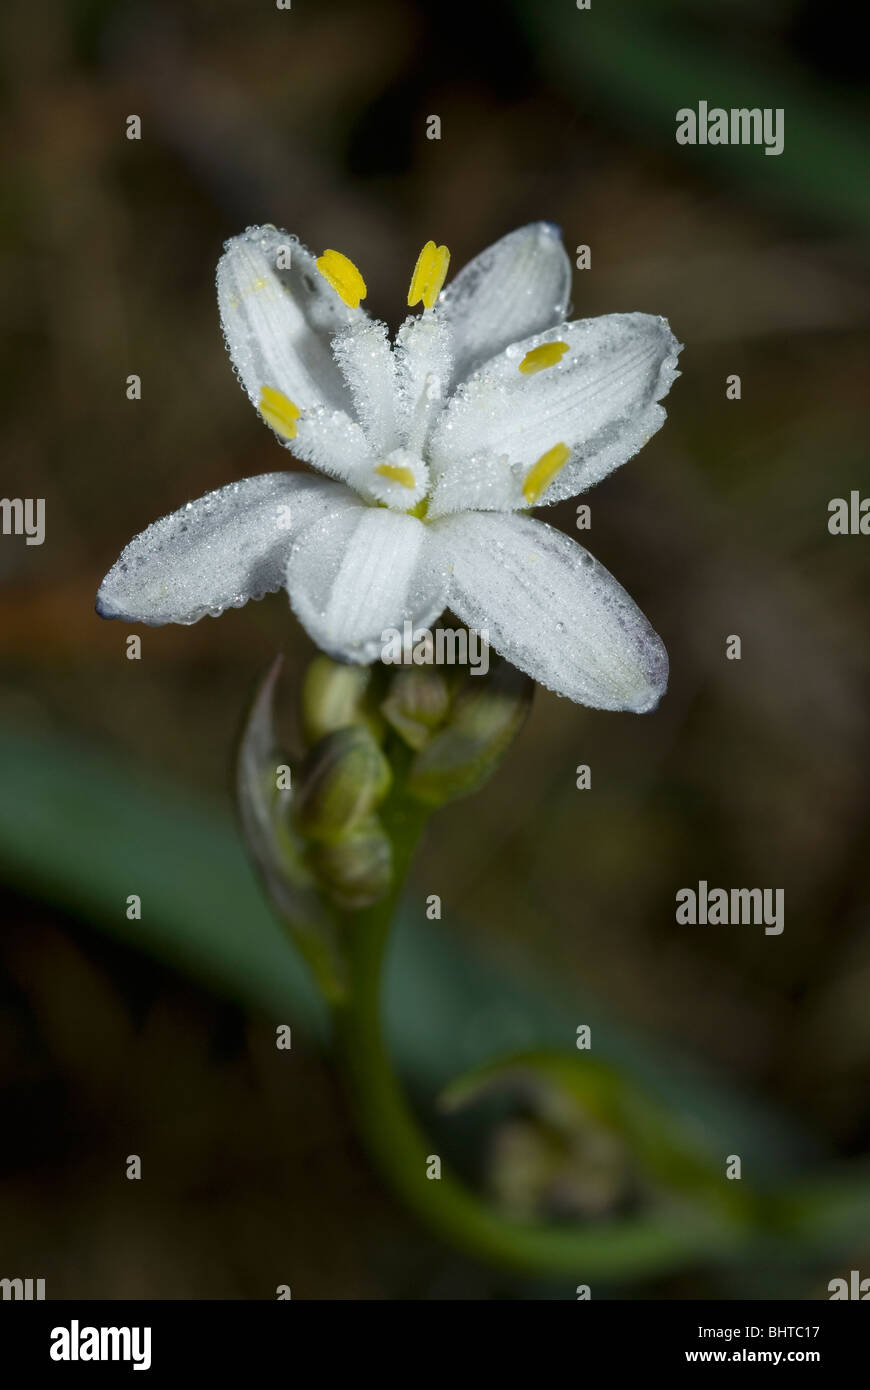 Kerry lily flower (Simethis planifolia) Stock Photo